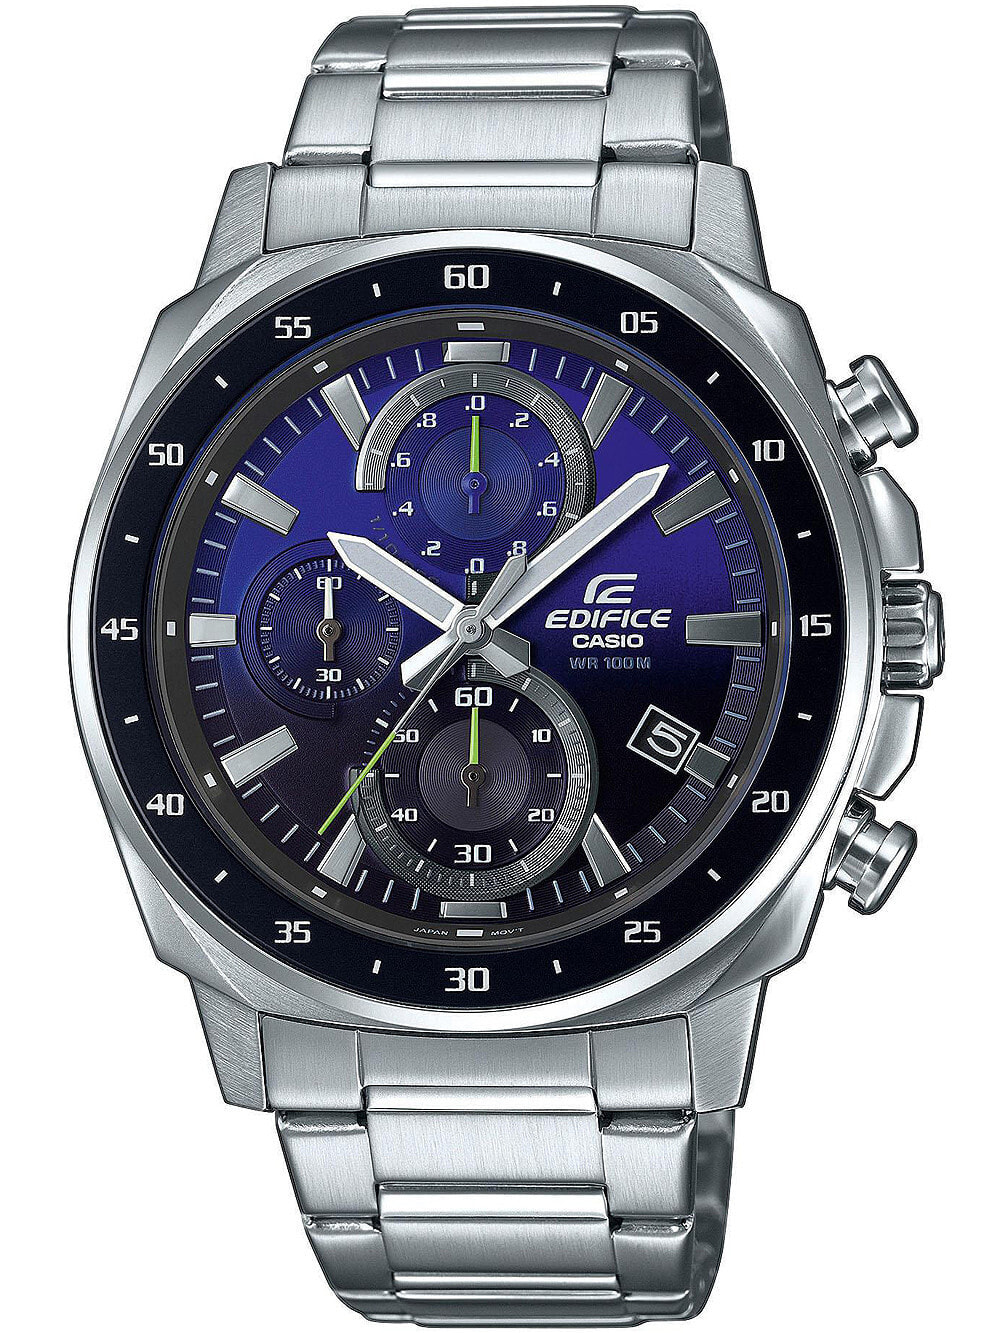 Мужские наручные часы с серебряным браслетом Casio EFV-600D-2AVUEF Edifice mens 44mm 10ATM